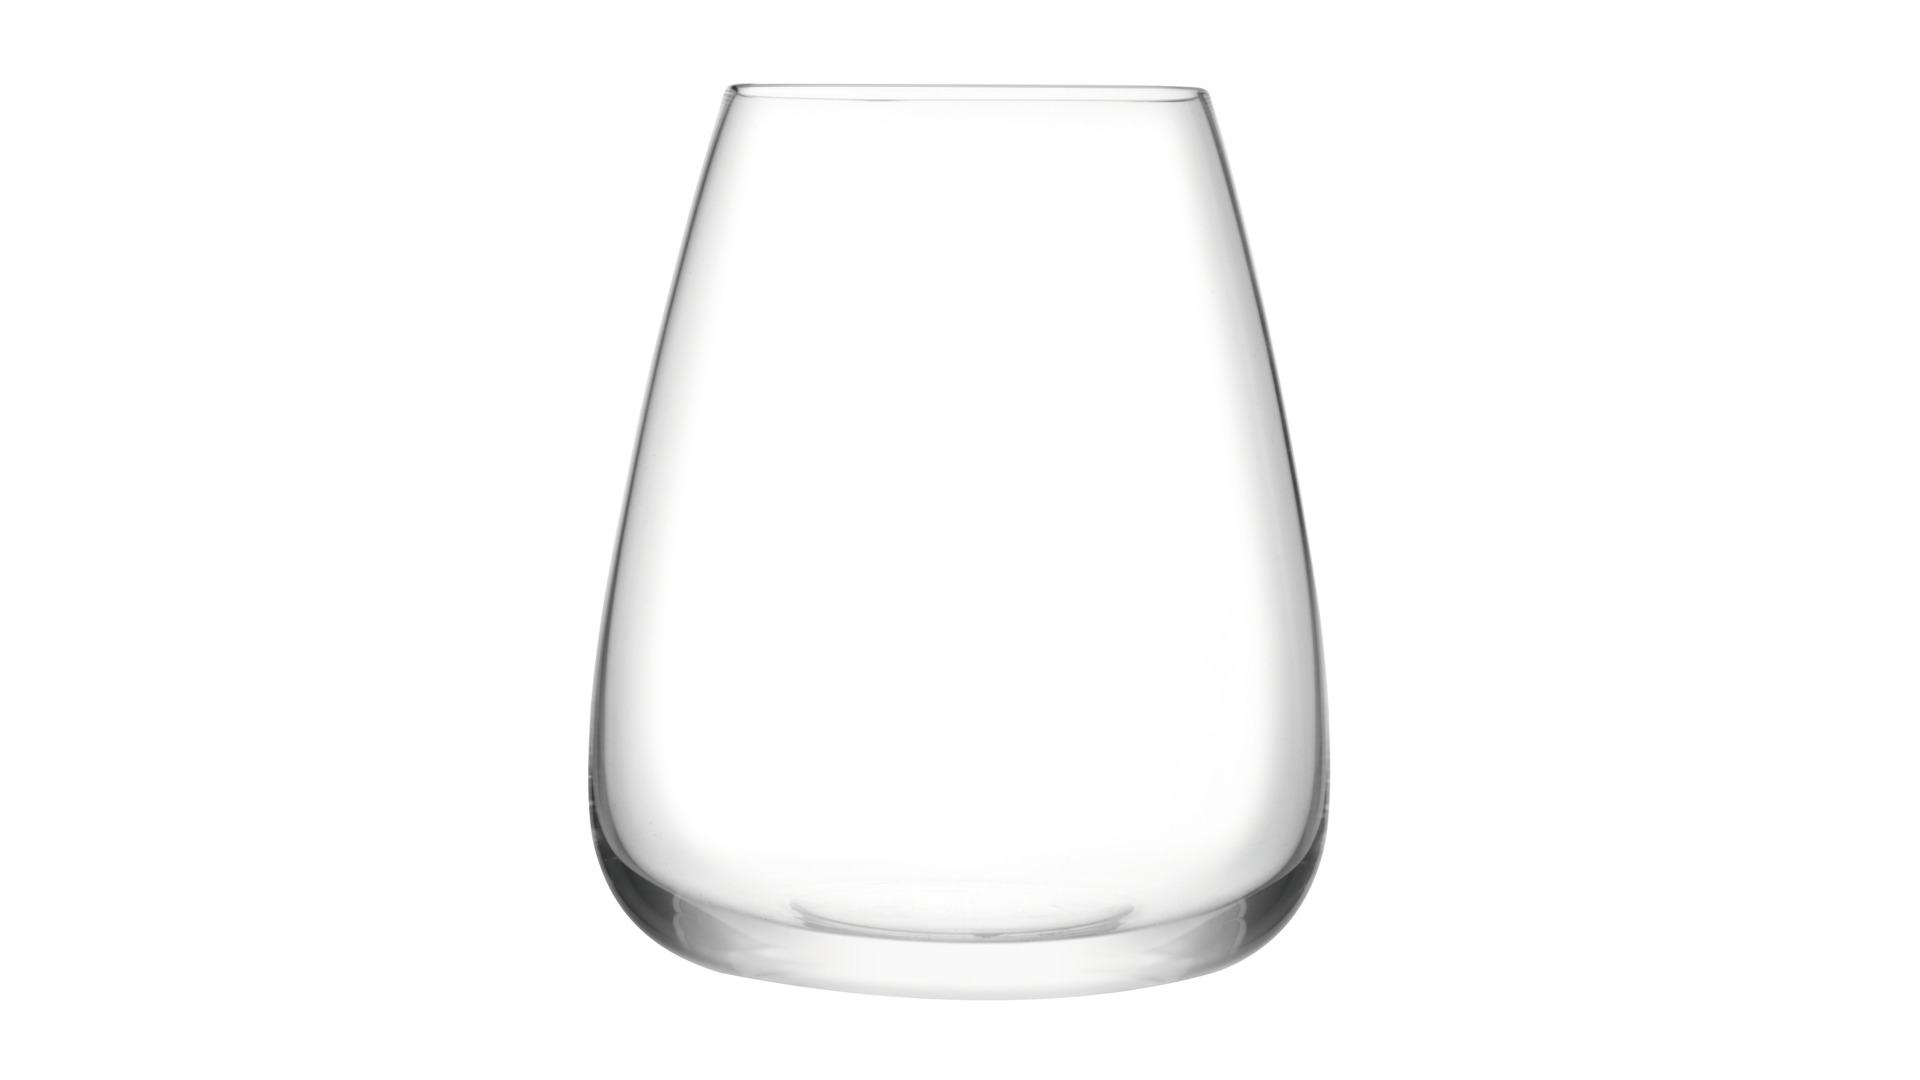 Набор бокалов для воды LSA International, Wine Culture, 590мл, 2шт.